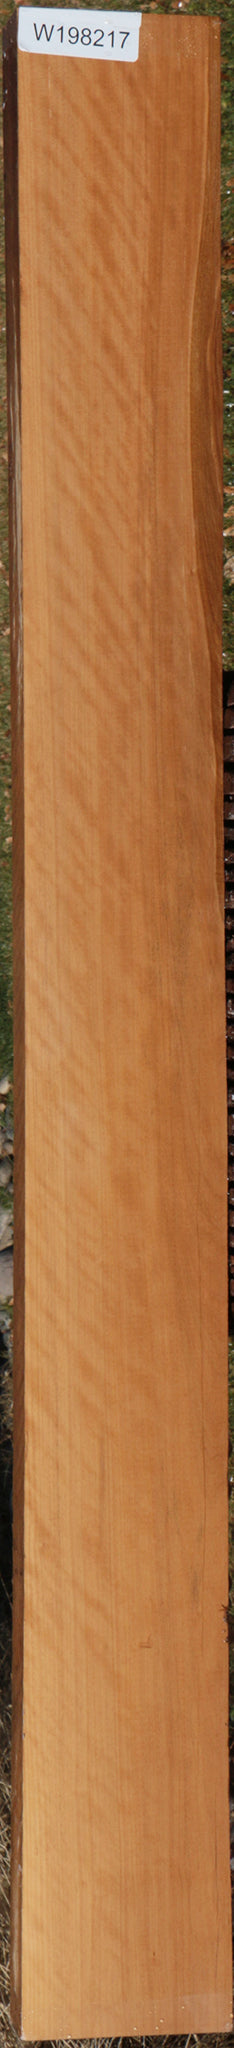 Exhibition Fiddleback Castello Boxwood Lumber